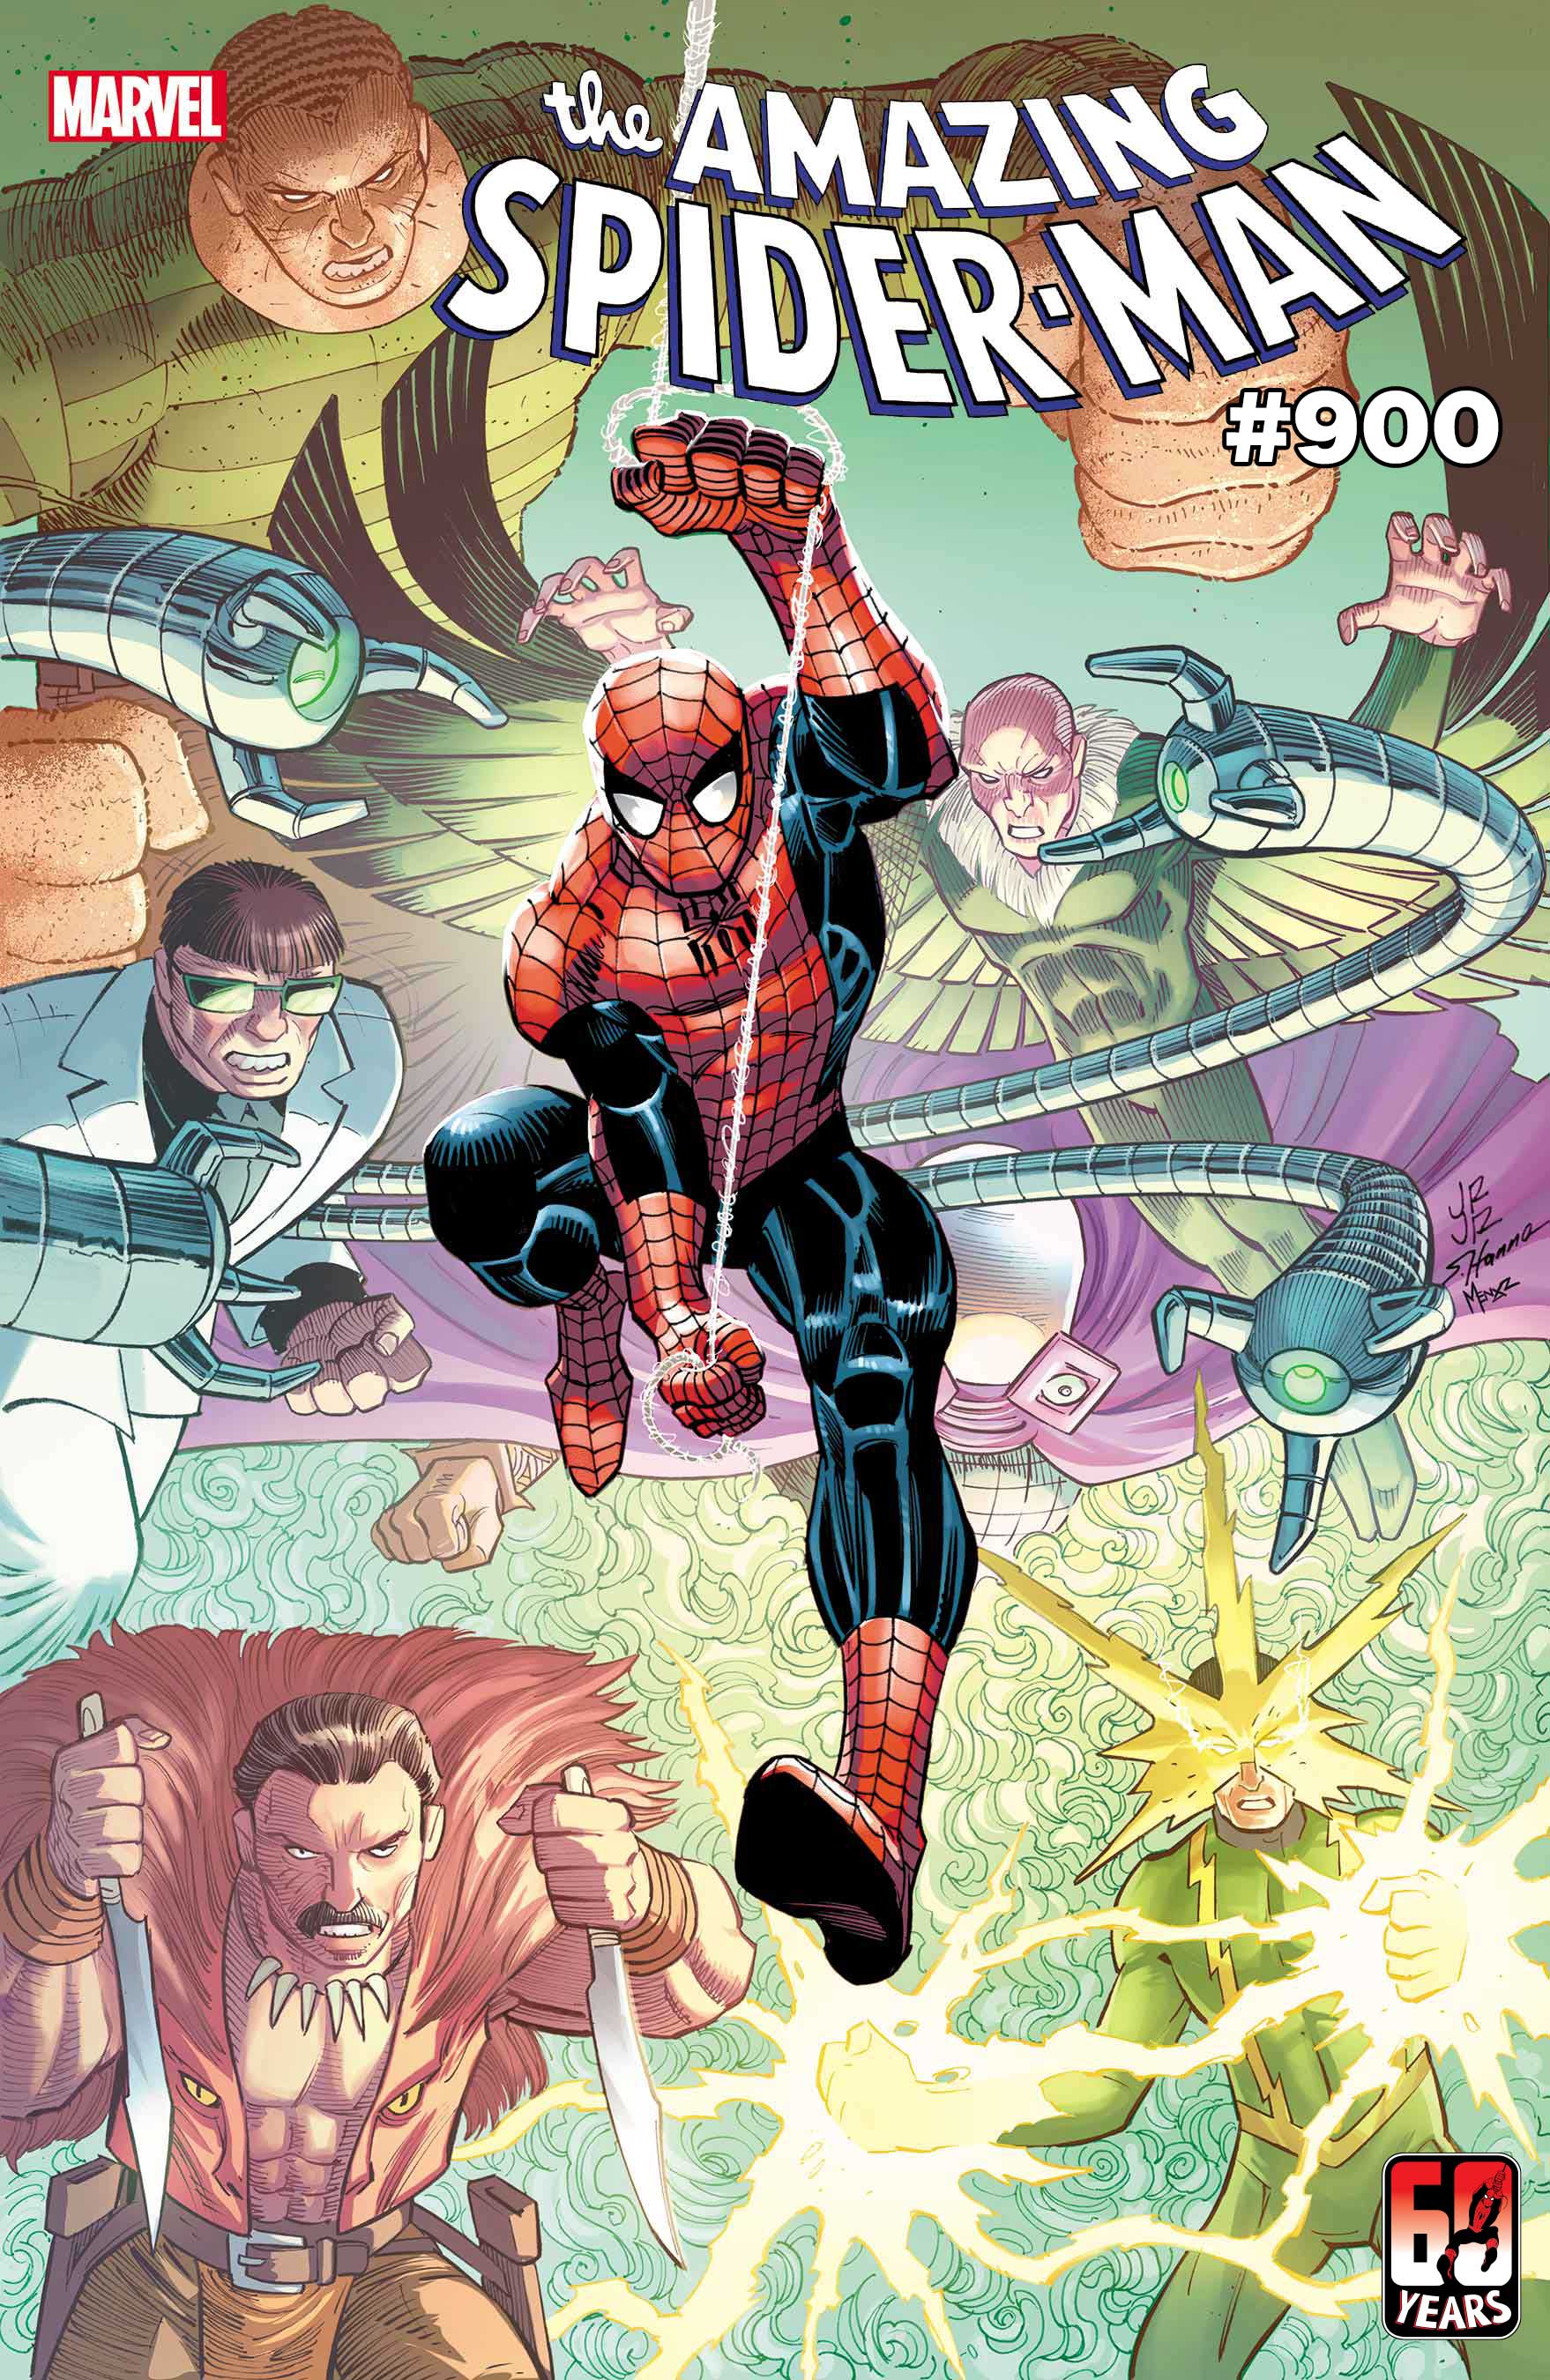 Siempre quieres leer Un Cómic Más!: ¡MIRA LAS TRECE PORTADAS DE AMAZING  SPIDER-MAN #900!